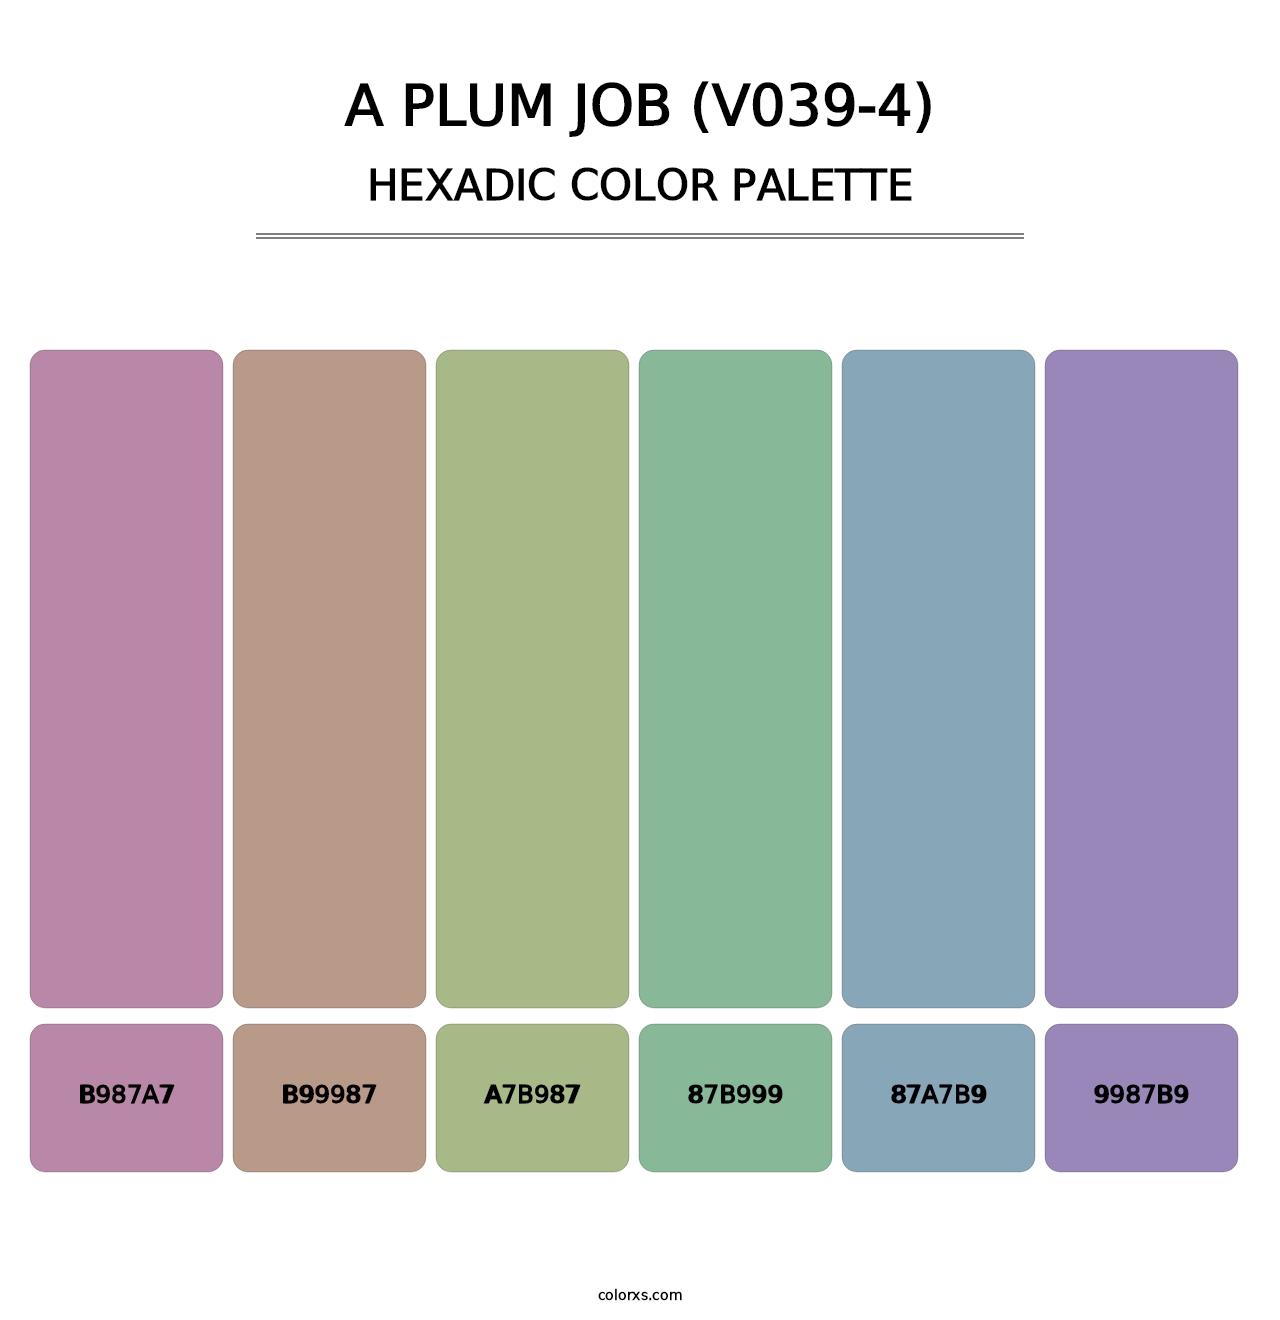 A Plum Job (V039-4) - Hexadic Color Palette